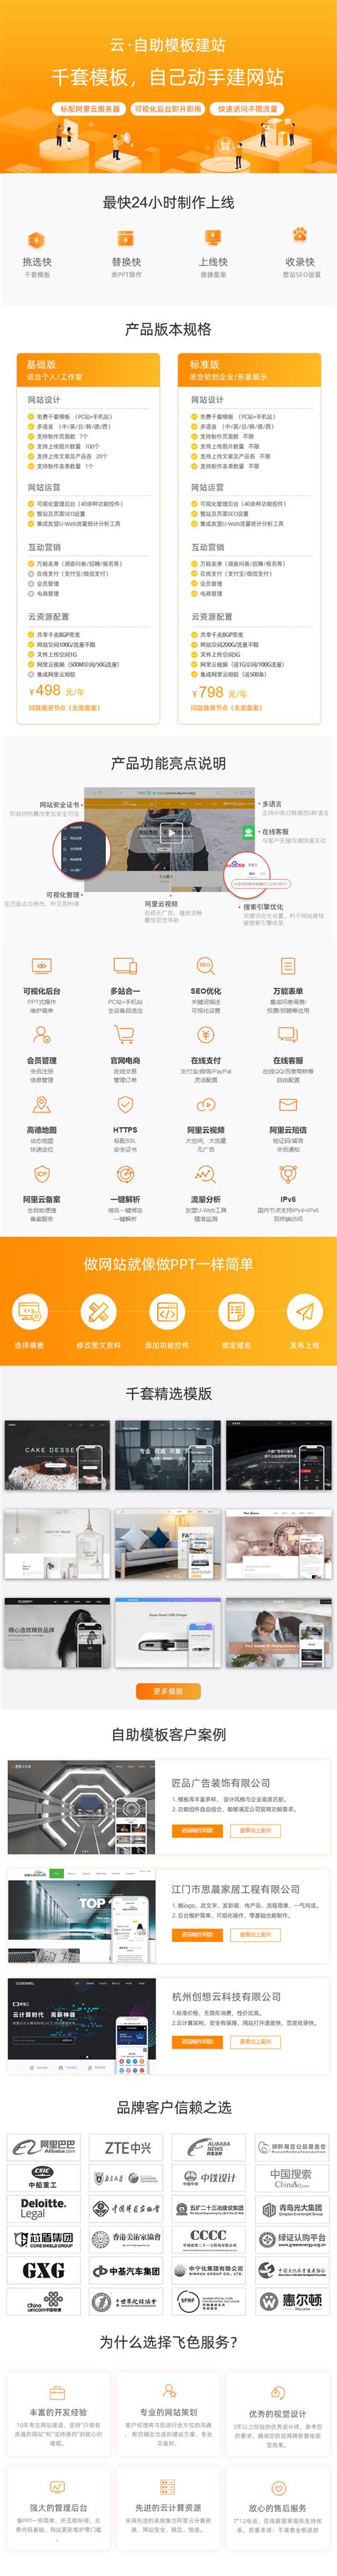 高端网站设计 一简设计 网页设计公司 郑州网站建设公司